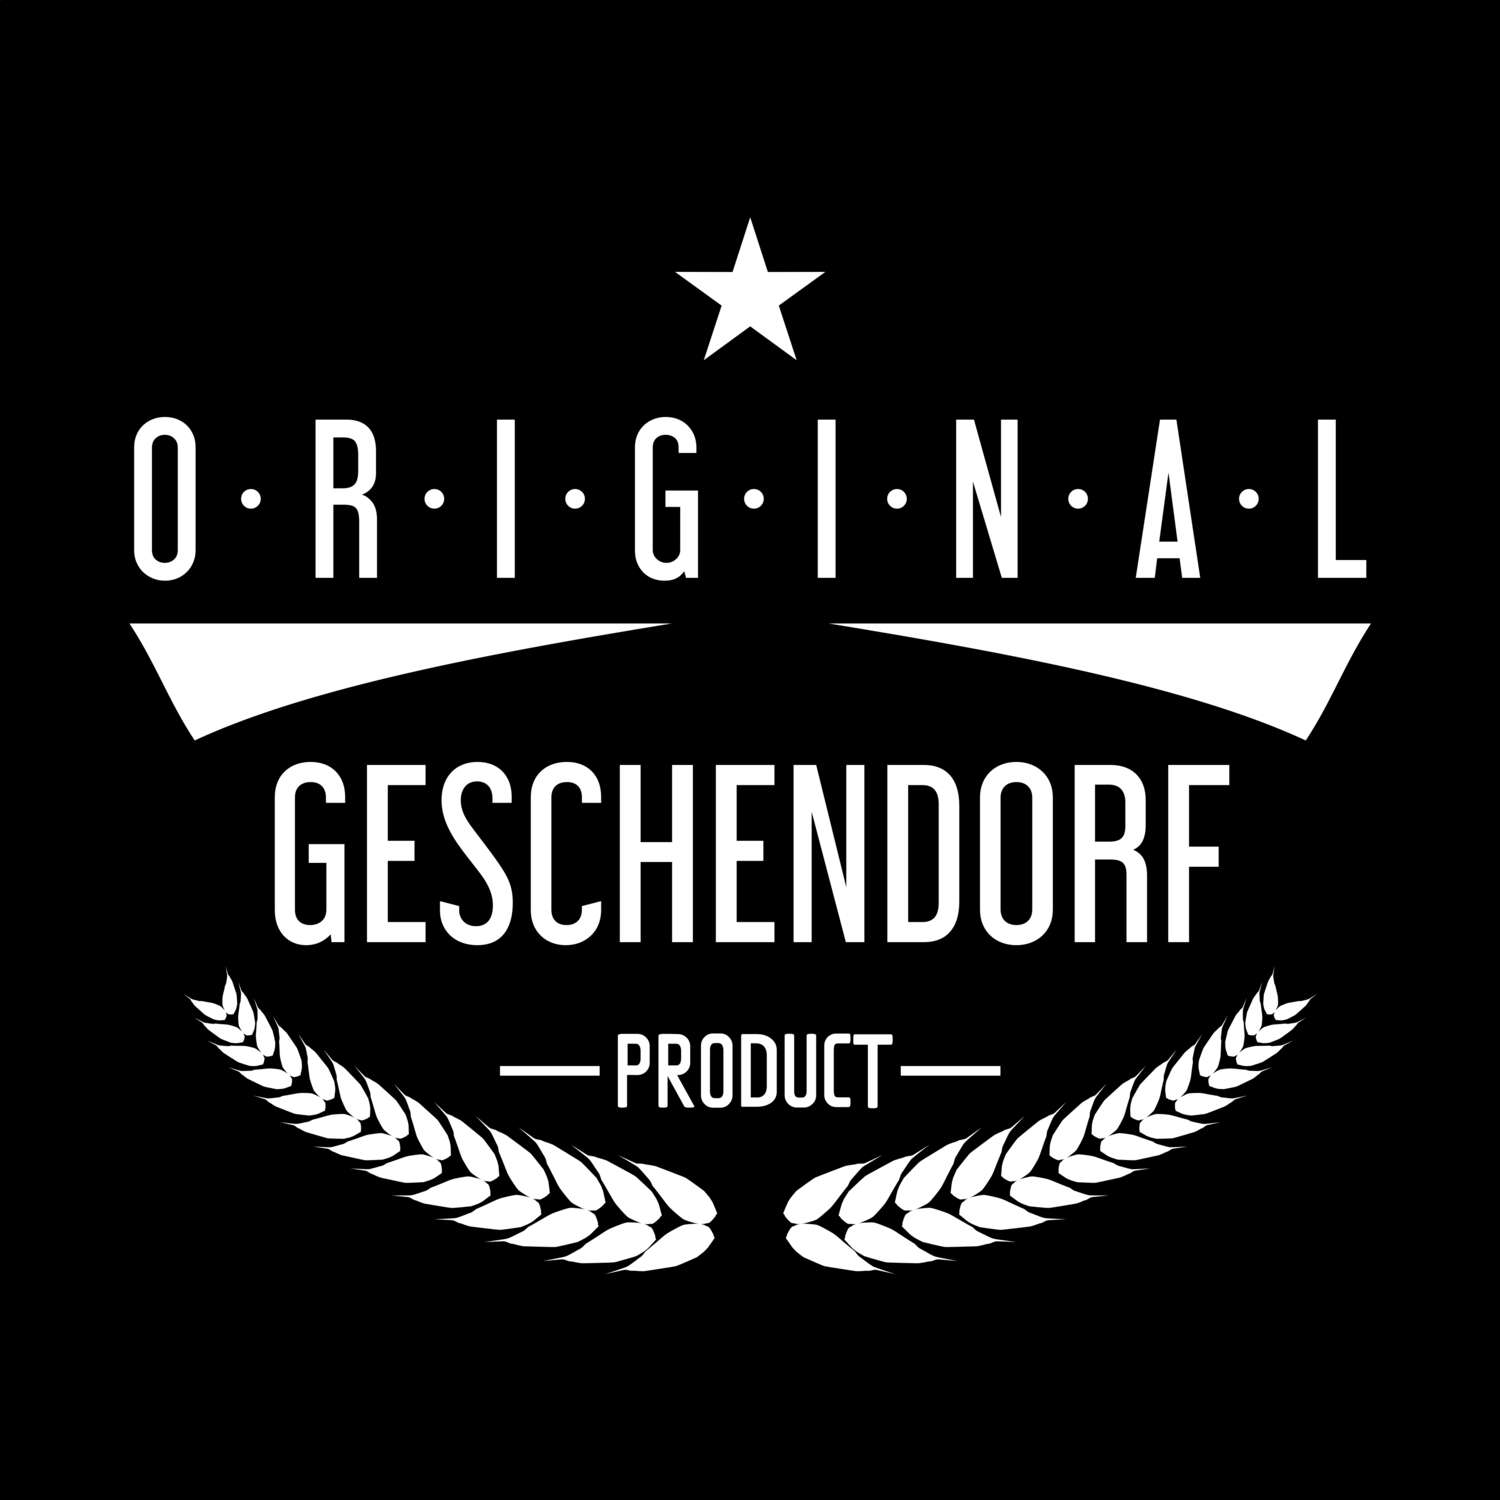 Geschendorf T-Shirt »Original Product«